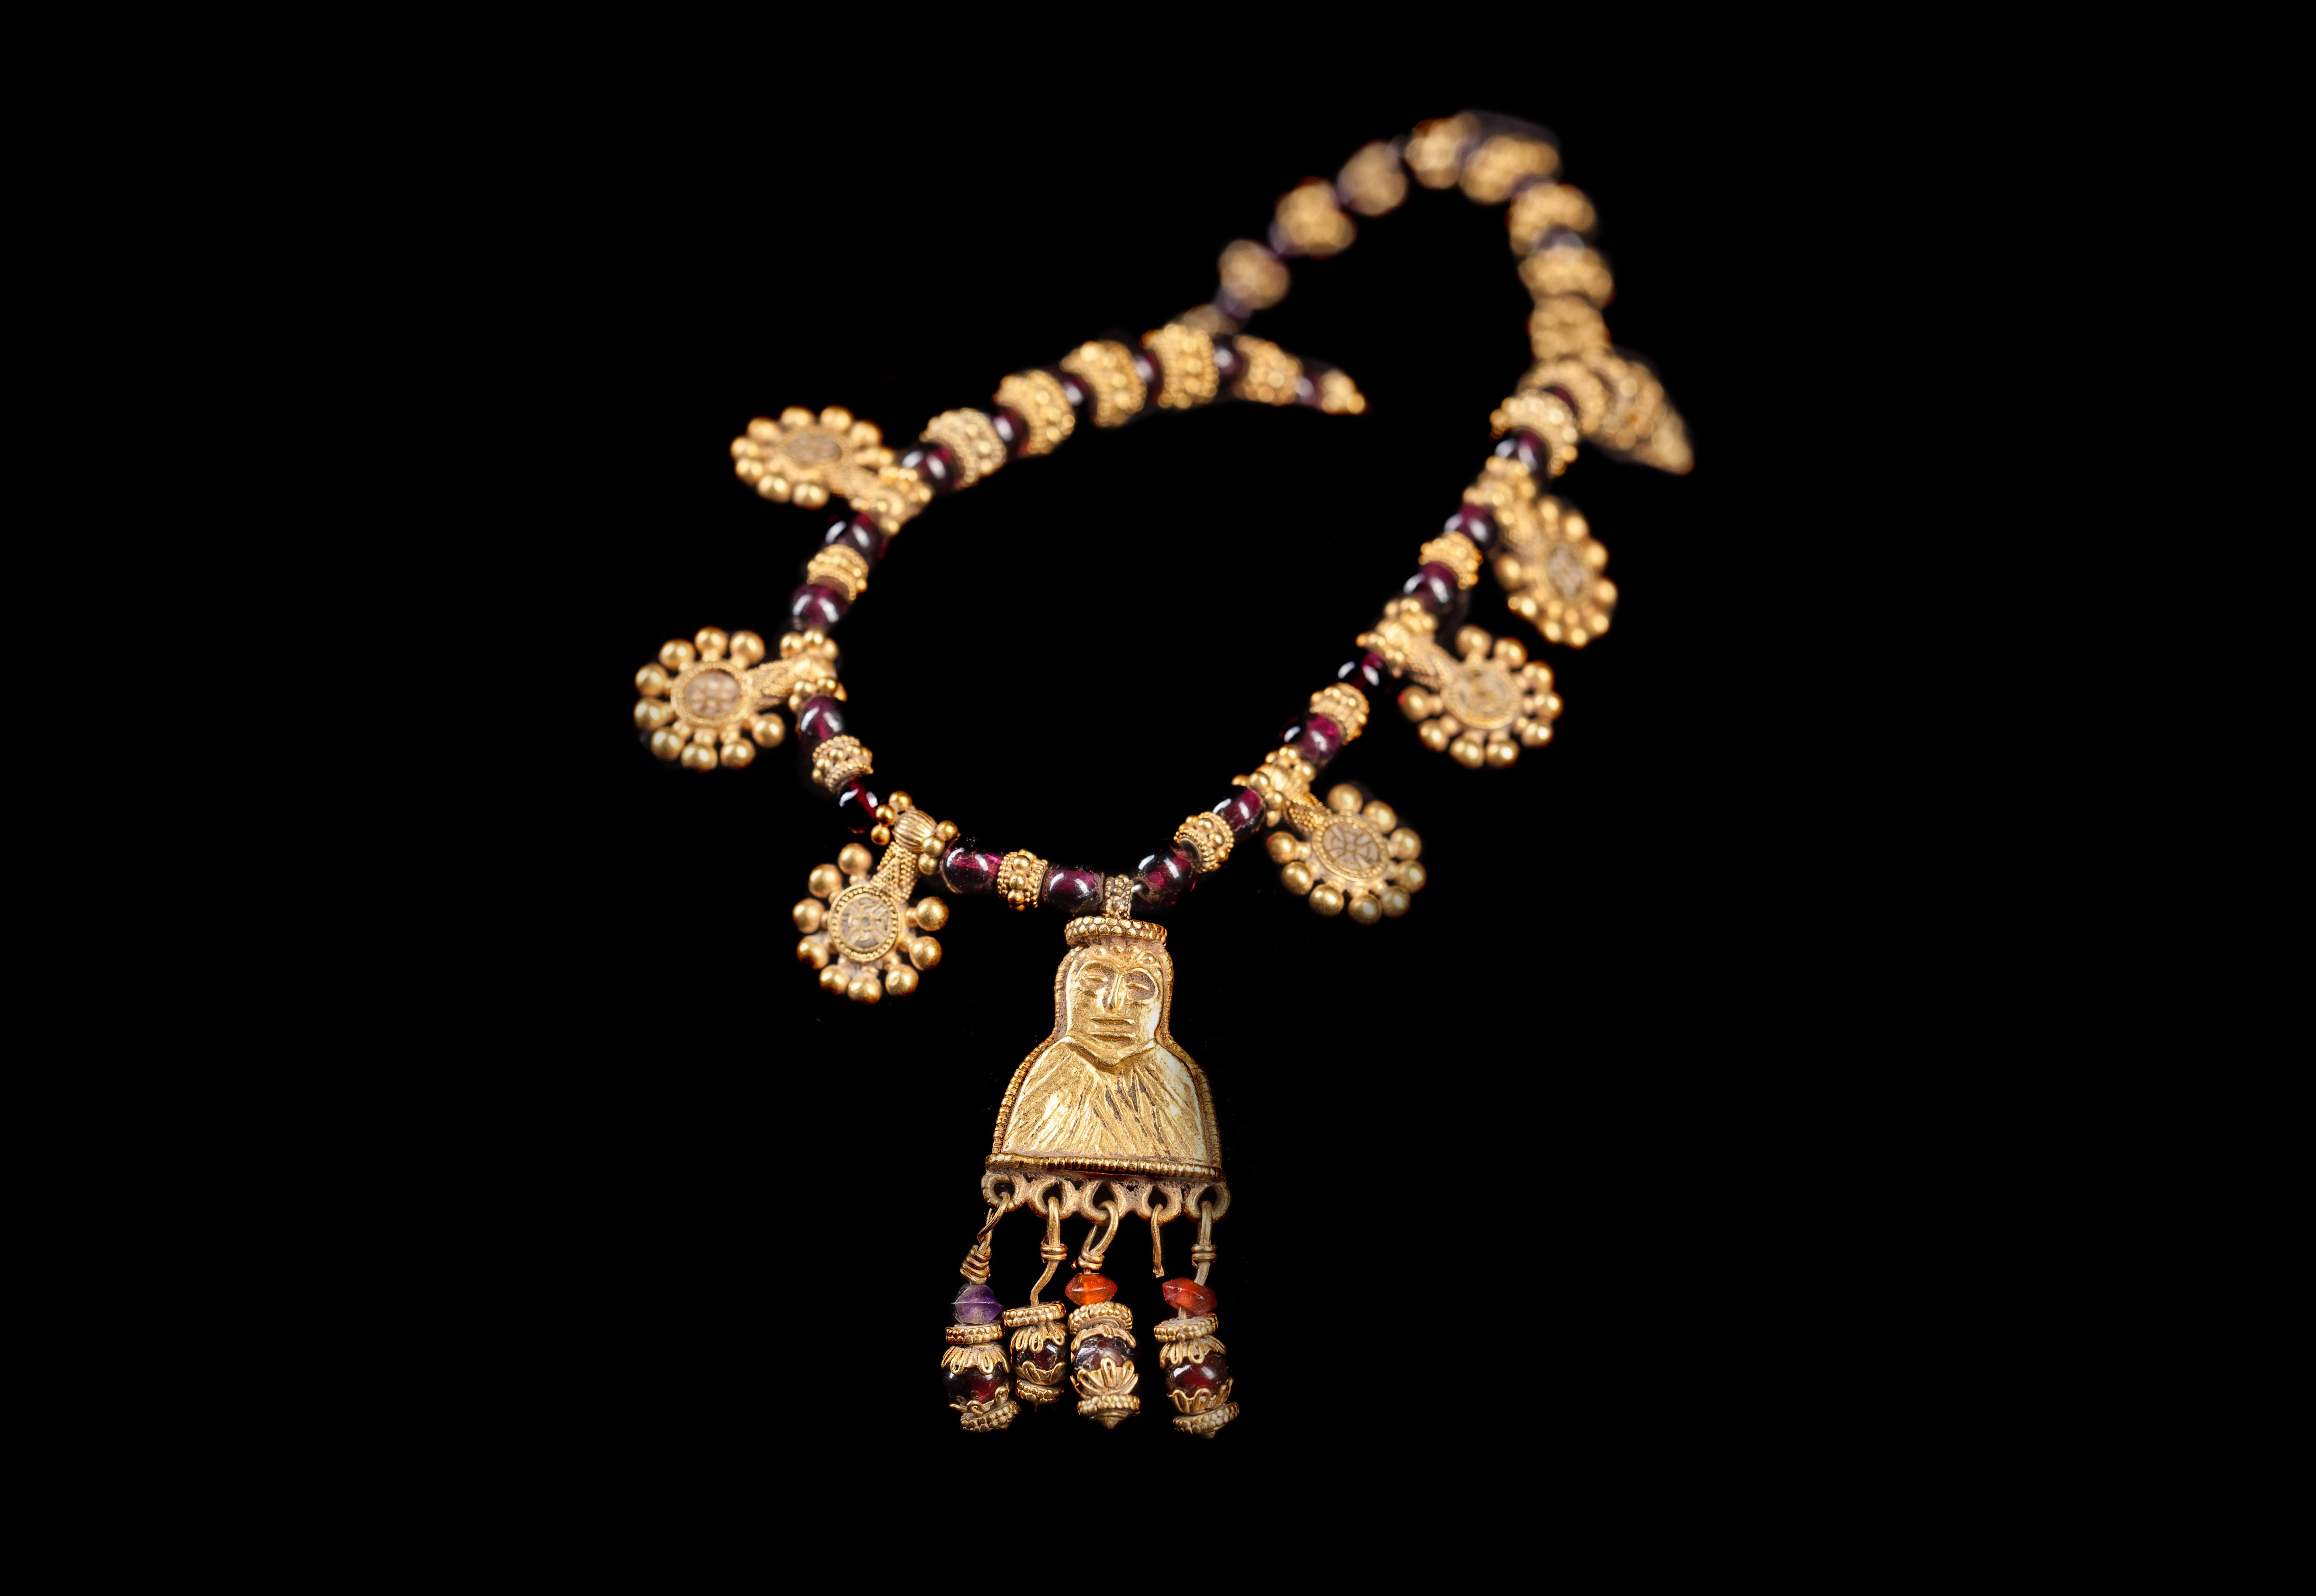 Collier de la période hellénistique, 3e-1er siècle A.I.C., Arabie du Sud, peut-être Yémen. Ce collier remarquable est composé de perles sphériques en grenat, intercalées en alternance avec des perles d'espacement en or et en granulés. Au centre, un